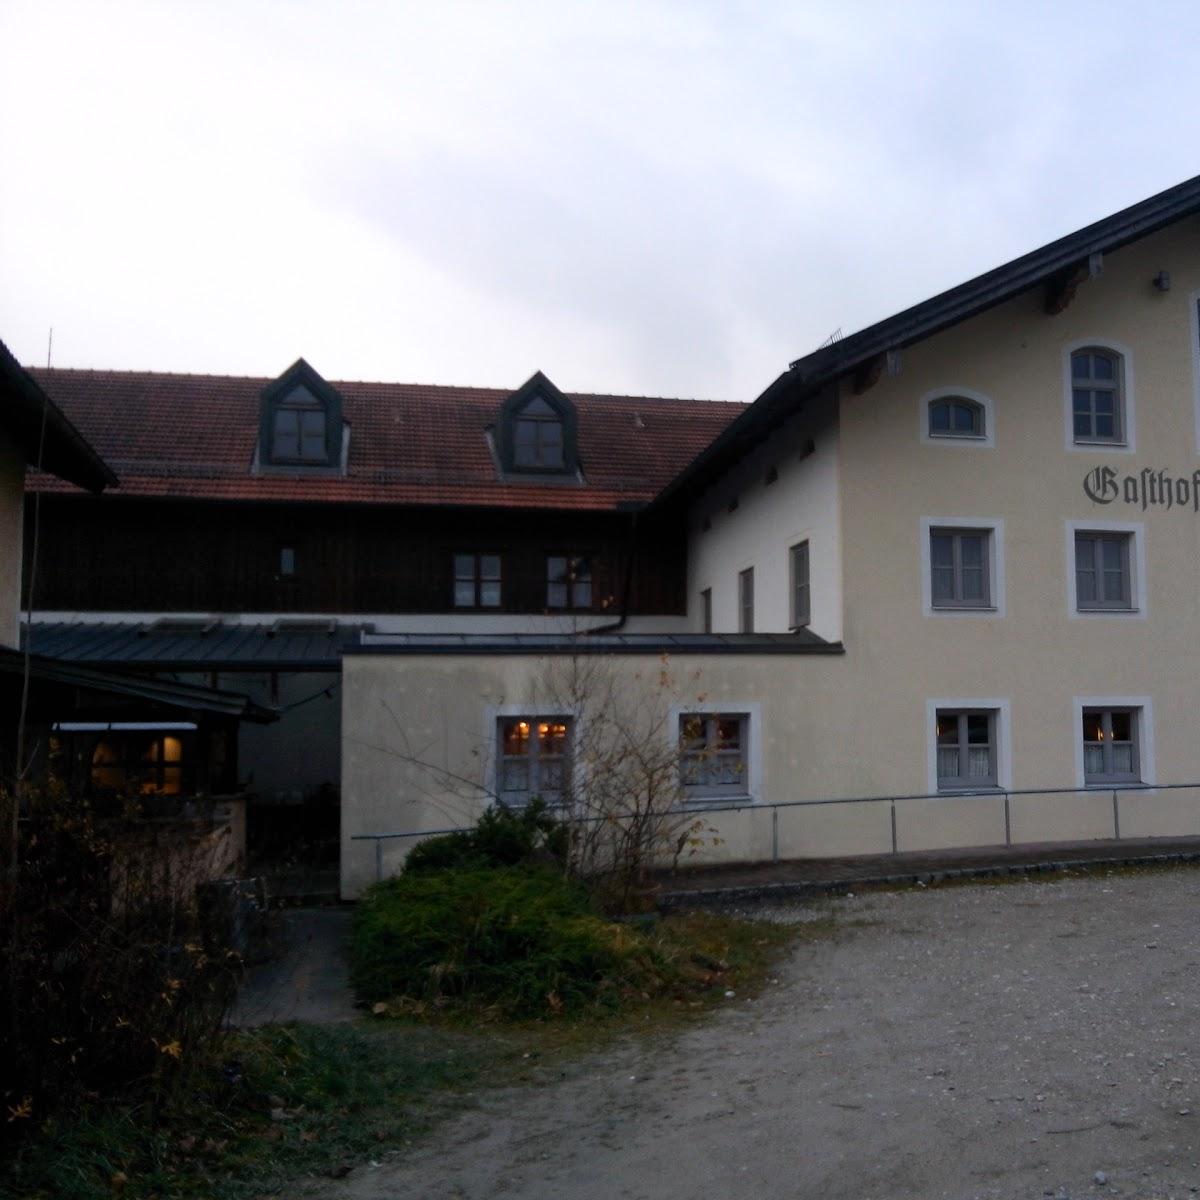 Restaurant "Gasthof Höhensteiger" in Eiselfing